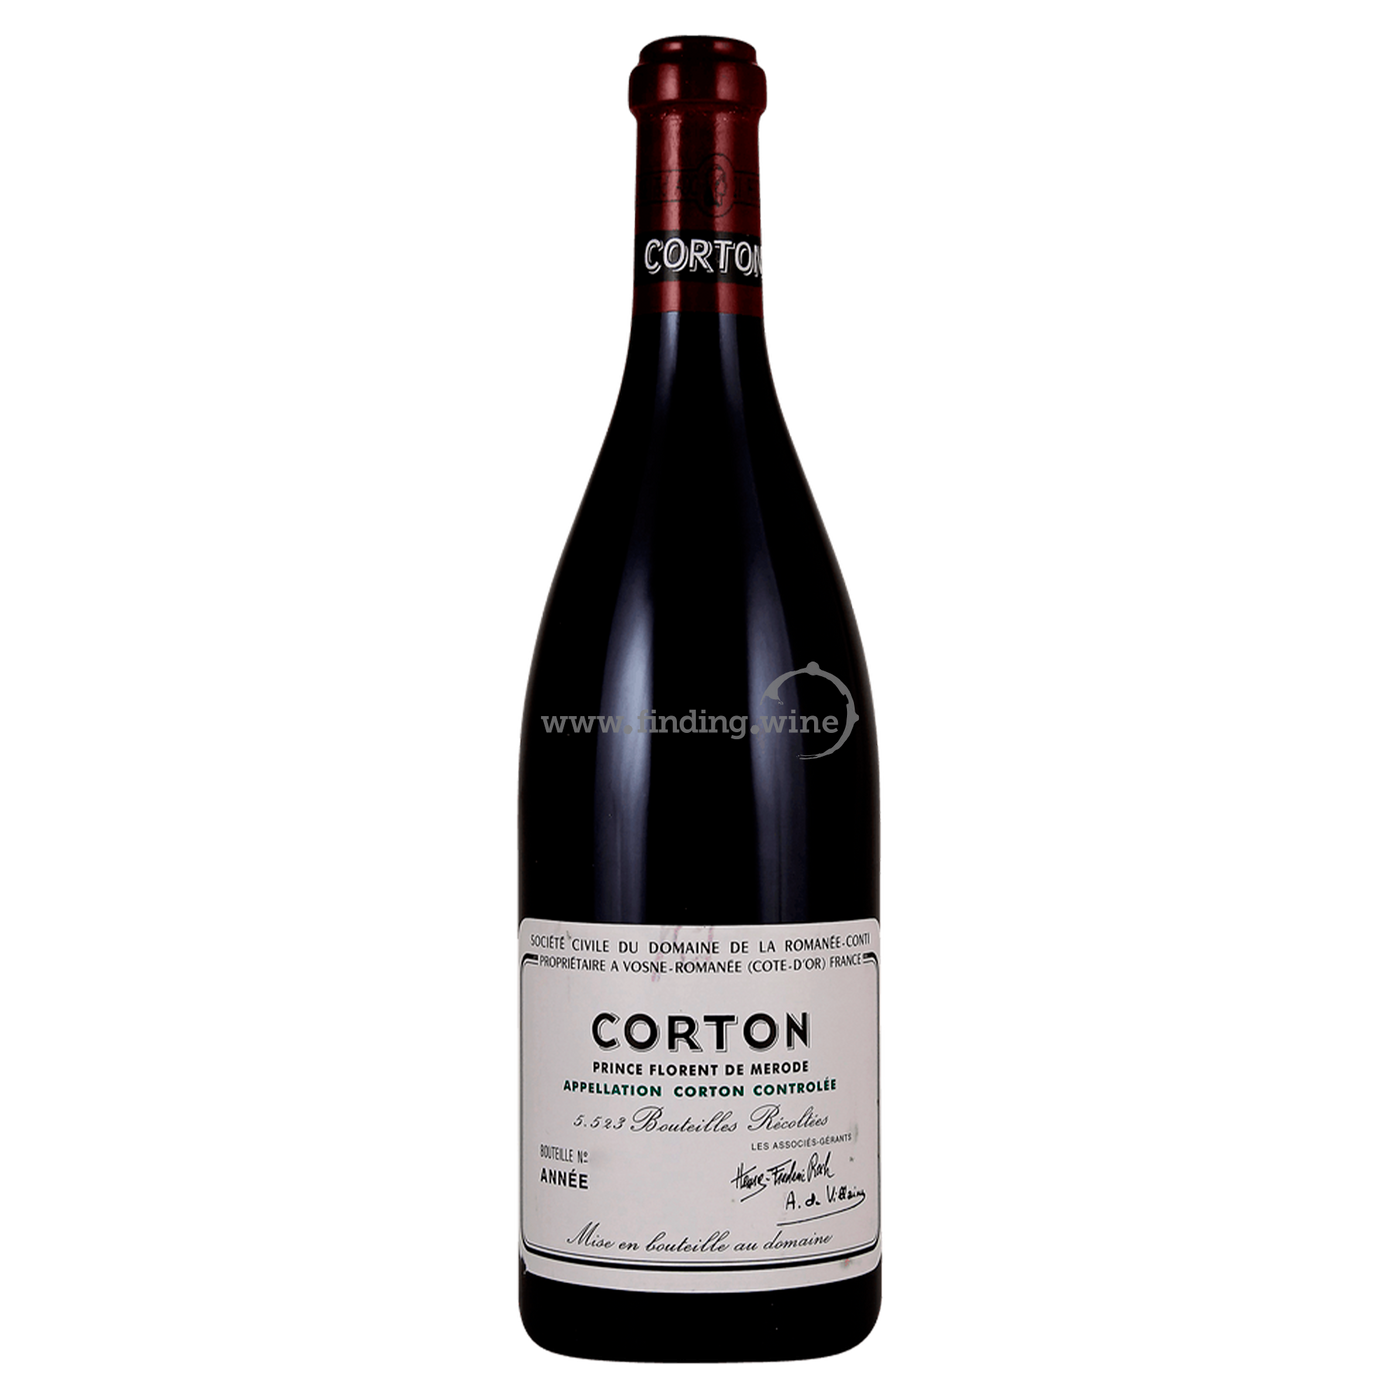 Domaine de la Romanee-Conti - 2015 - Corton Grand Cru - 750 ml